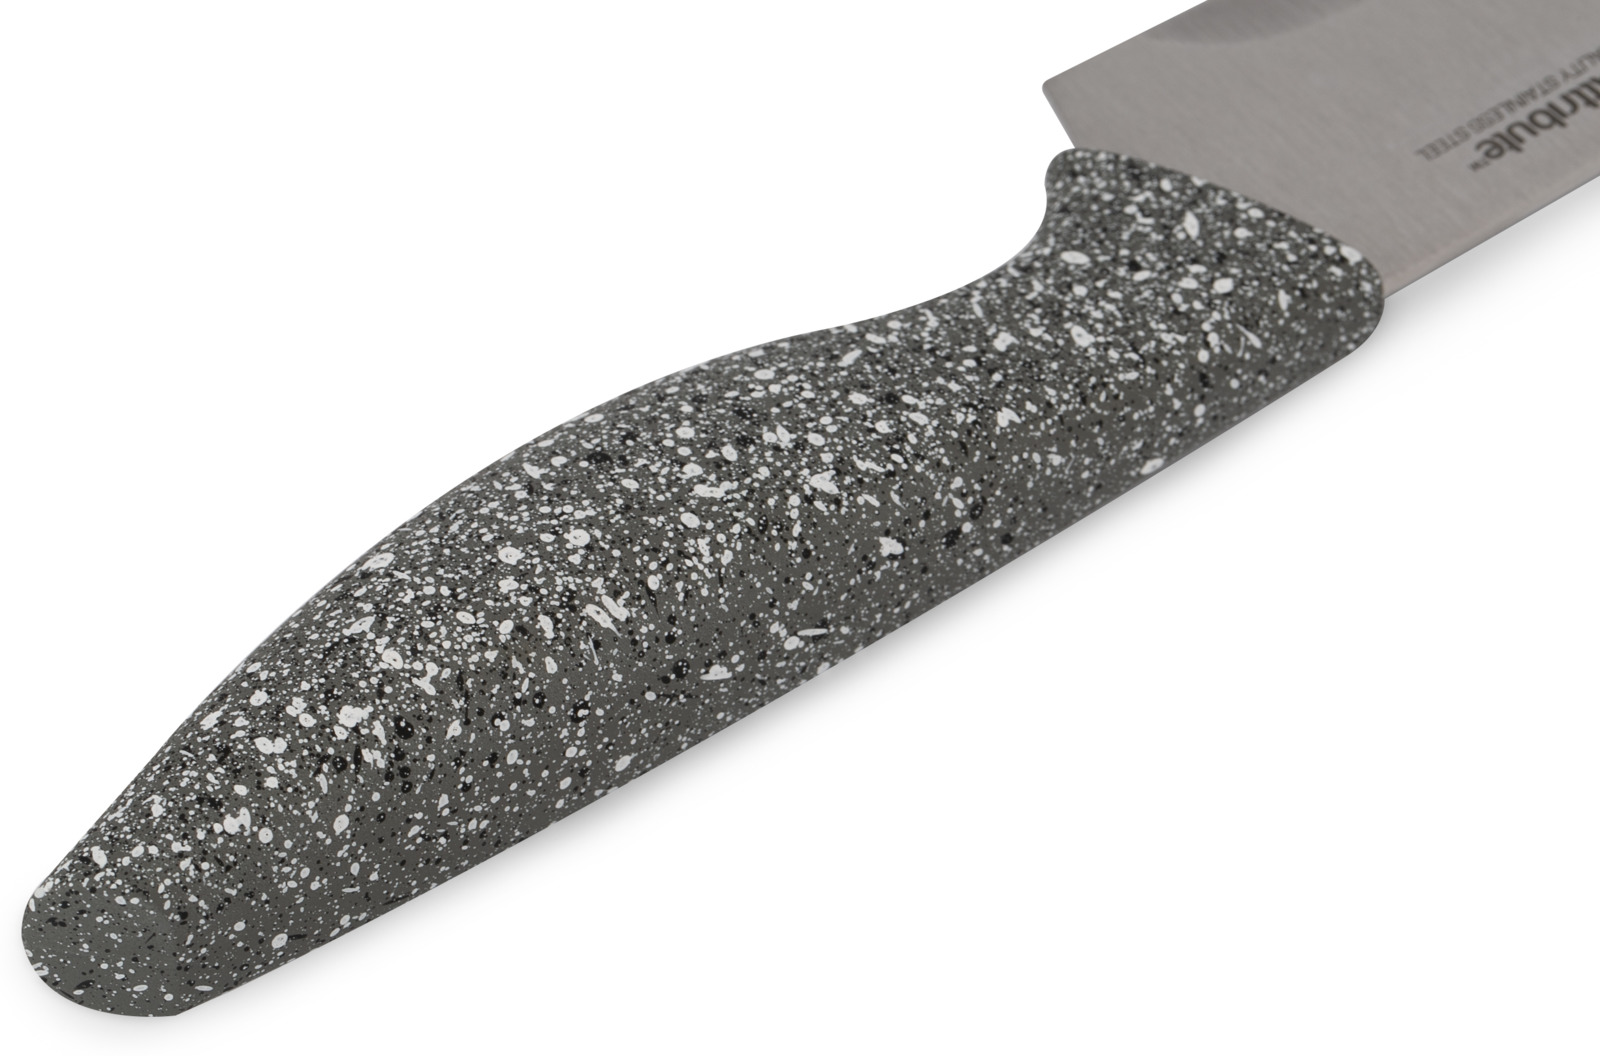 фото Нож поварской Attribute Knife "Stone", длина лезвия 20 см